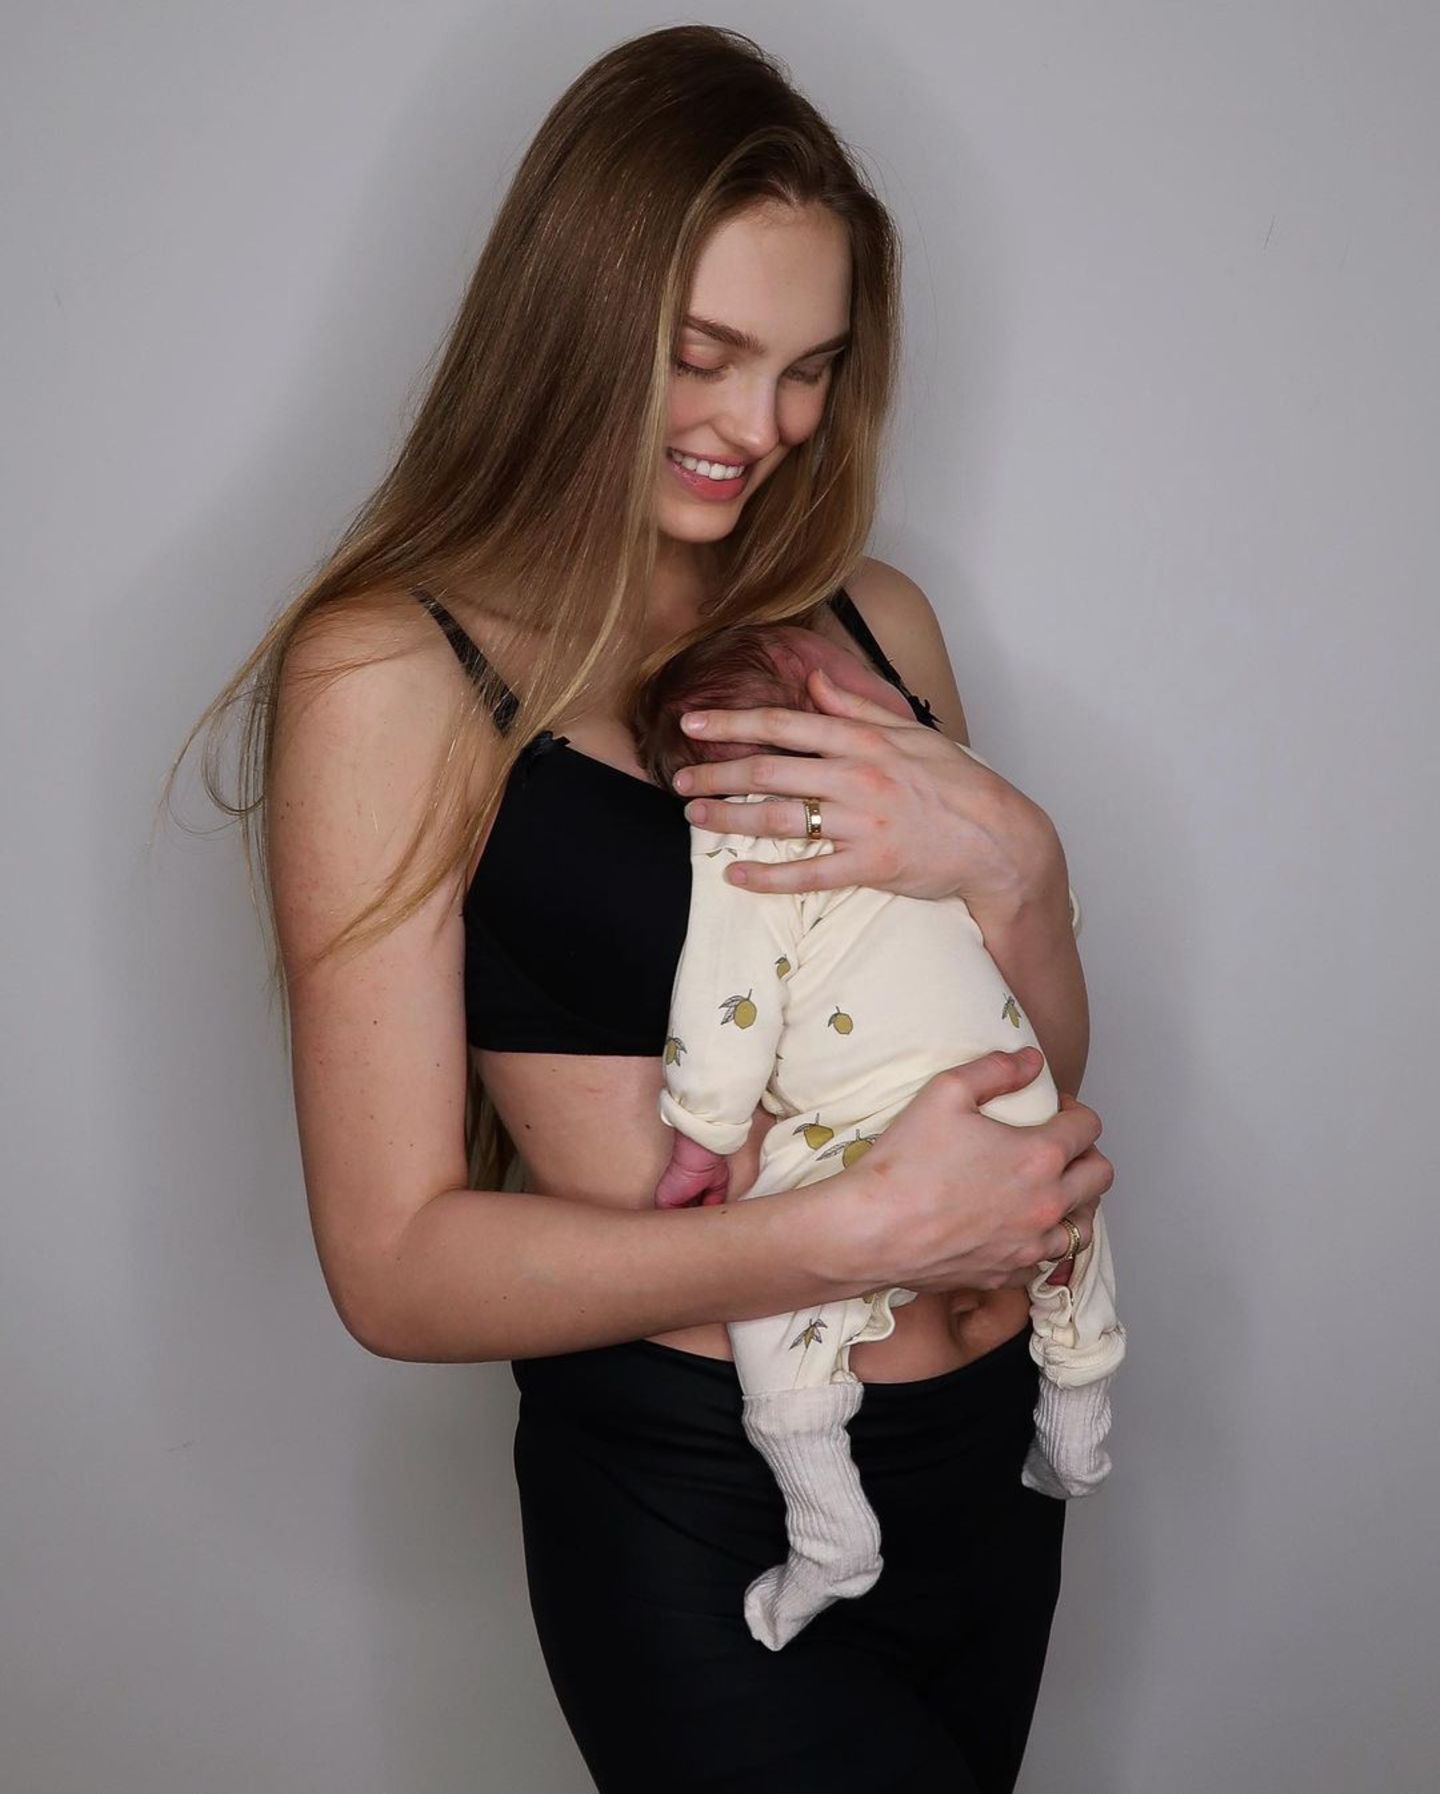 Keine zwei Wochen nach der Geburt ihrer Tochter Mint tritt Romee Strijd in BH und Leggings vor die Kamera. Überglücklich präsentiert sie sich auf Instagram und zeigt dabei ihre Figur, die nach wenigen Tagen schon wieder so schlank, wie vor der Geburt scheint. Auch ihre Modelkolleginnen sind ganz verliebt und überschütten ihren Post mit süßen Emojis.